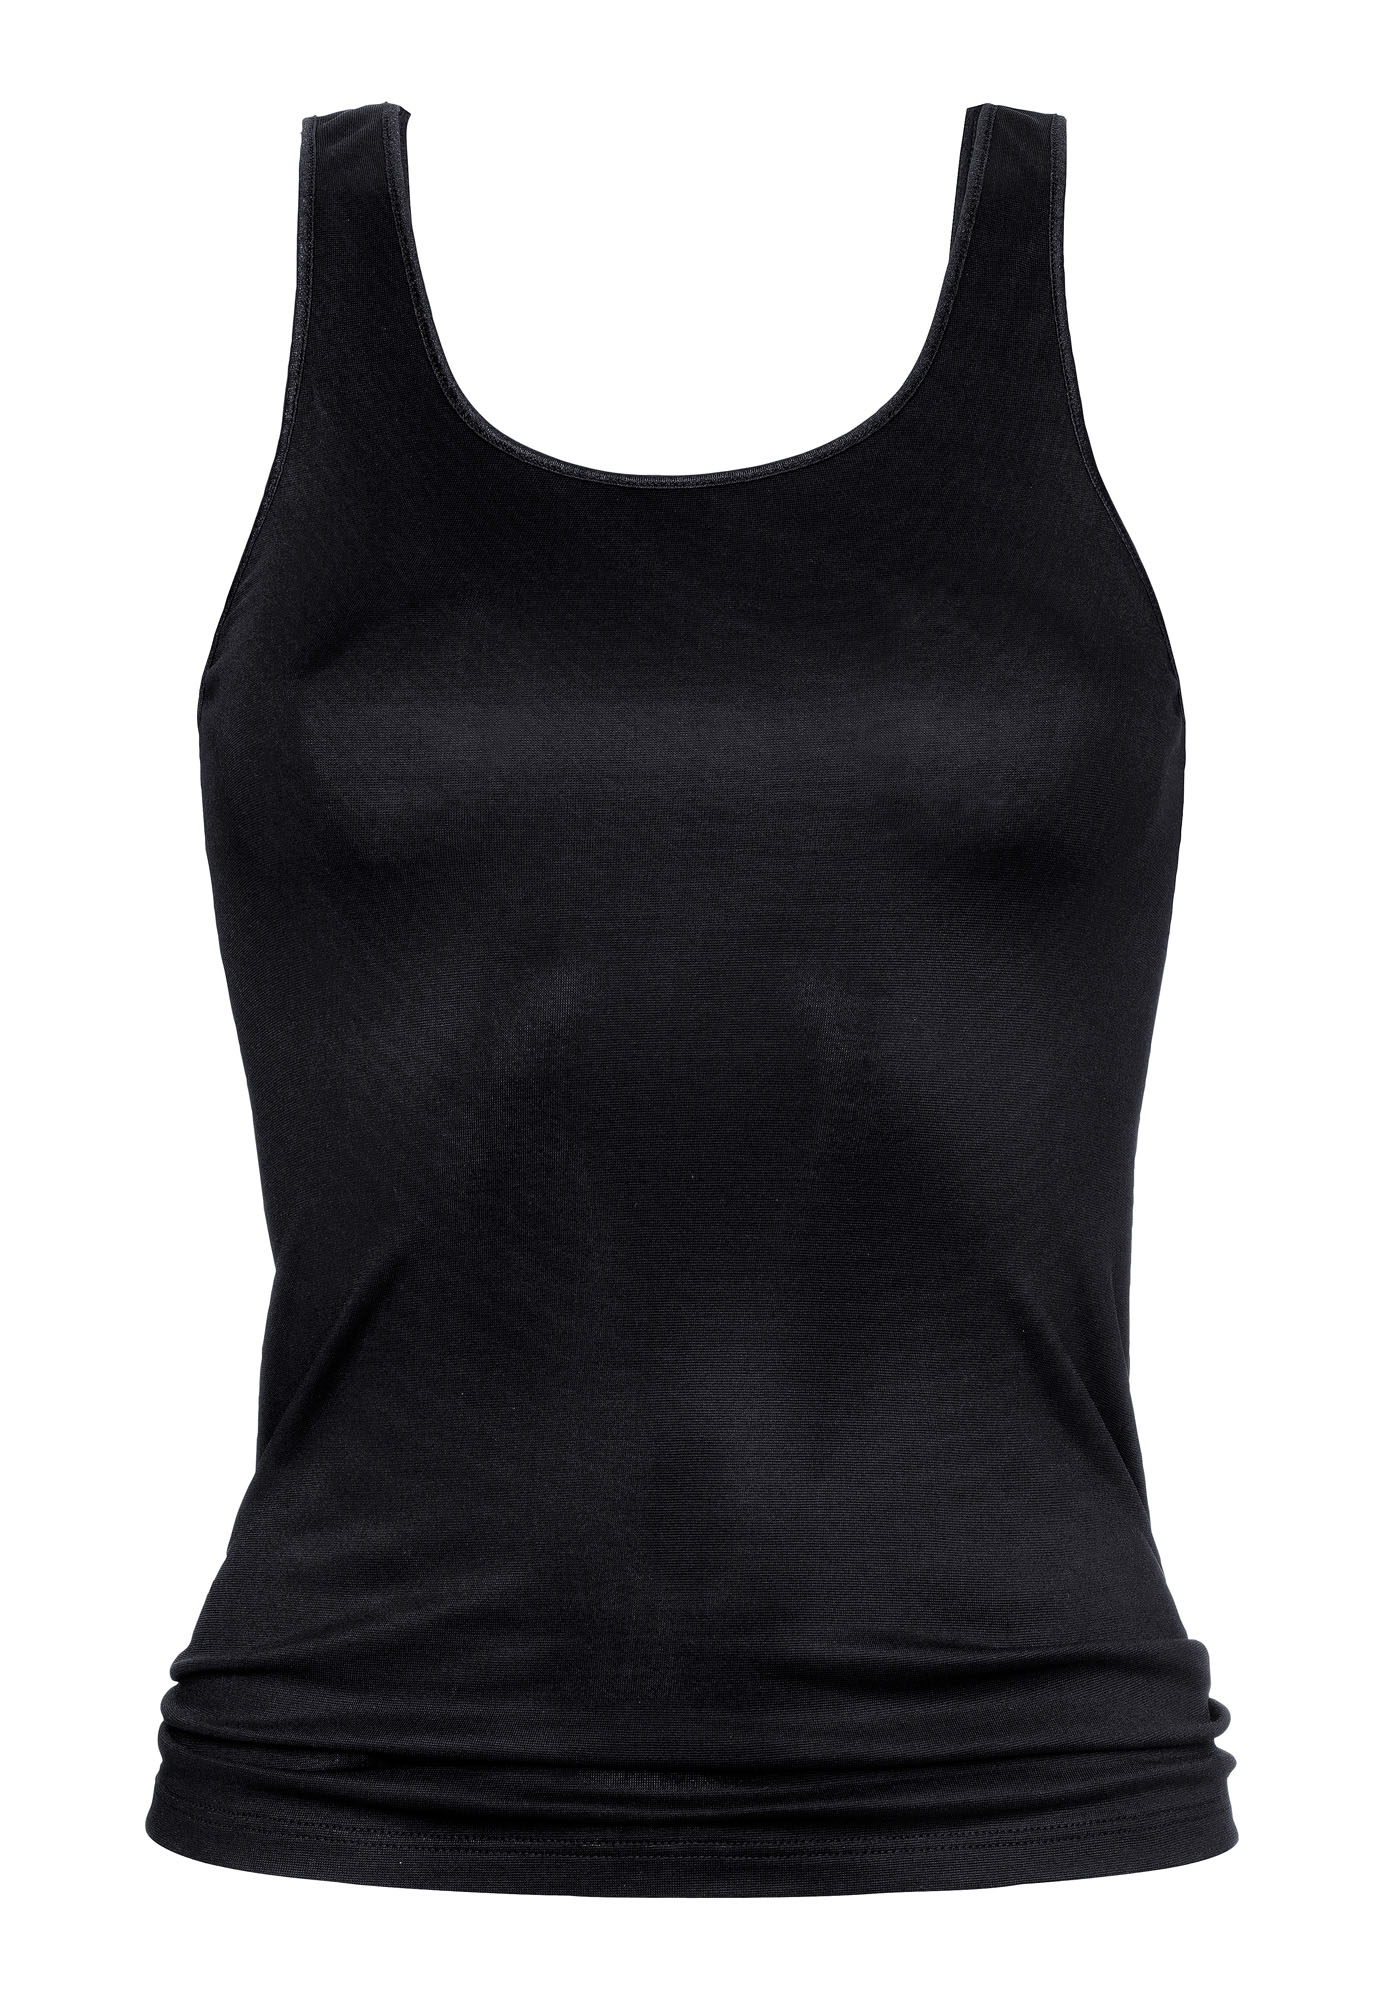 Camiseta deportiva para mujer con tirantes anchos color: blanco, negro y talla: 38-48